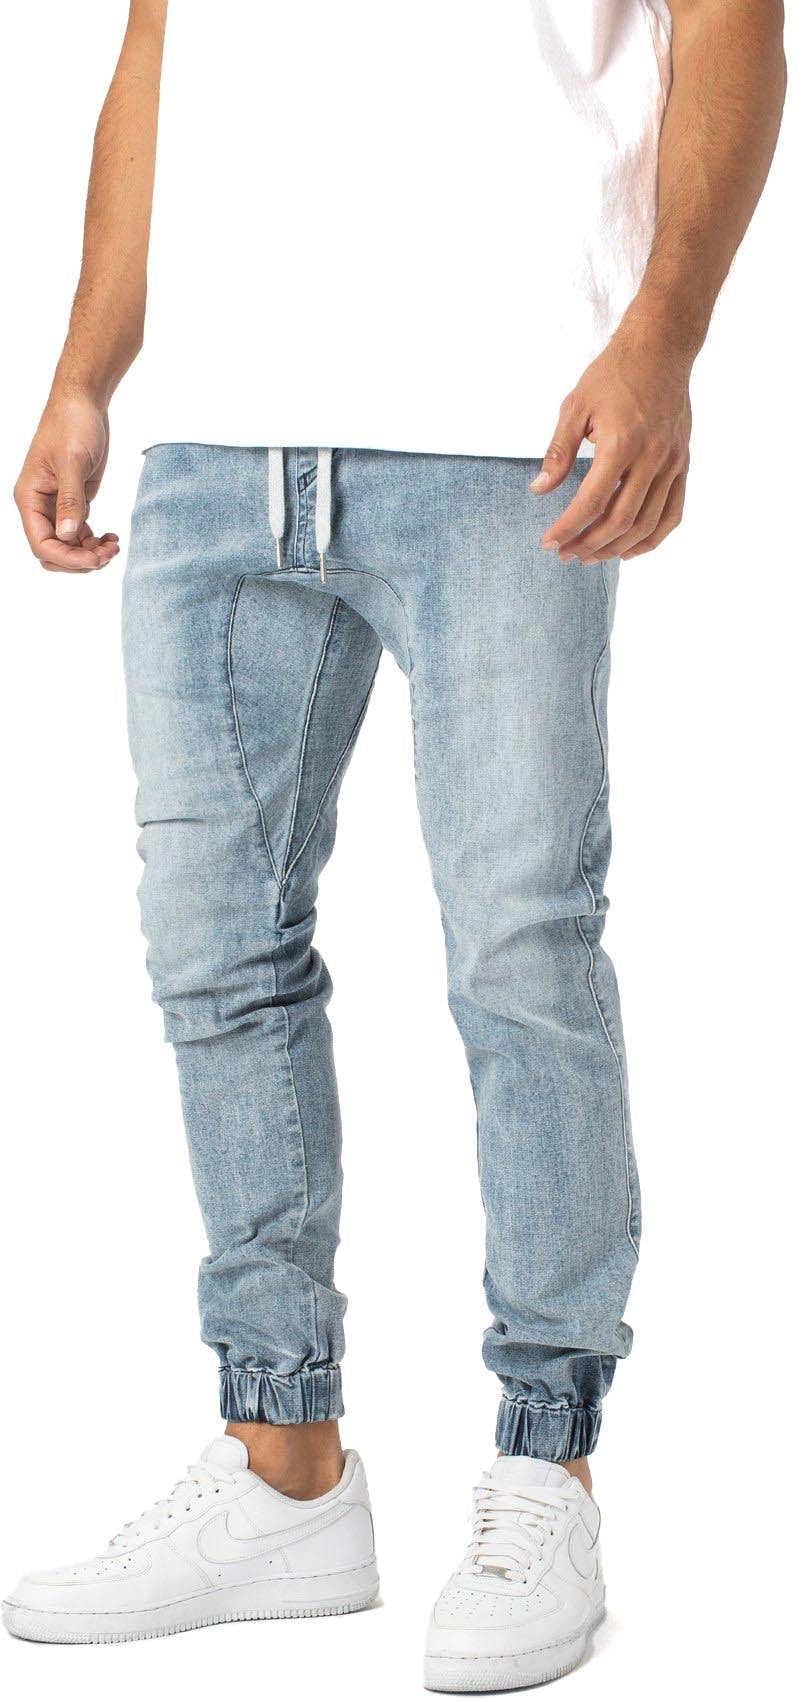 Numéro de l'image de la galerie de produits 2 pour le produit Pantalon de jogging Sureshot Denim - Homme